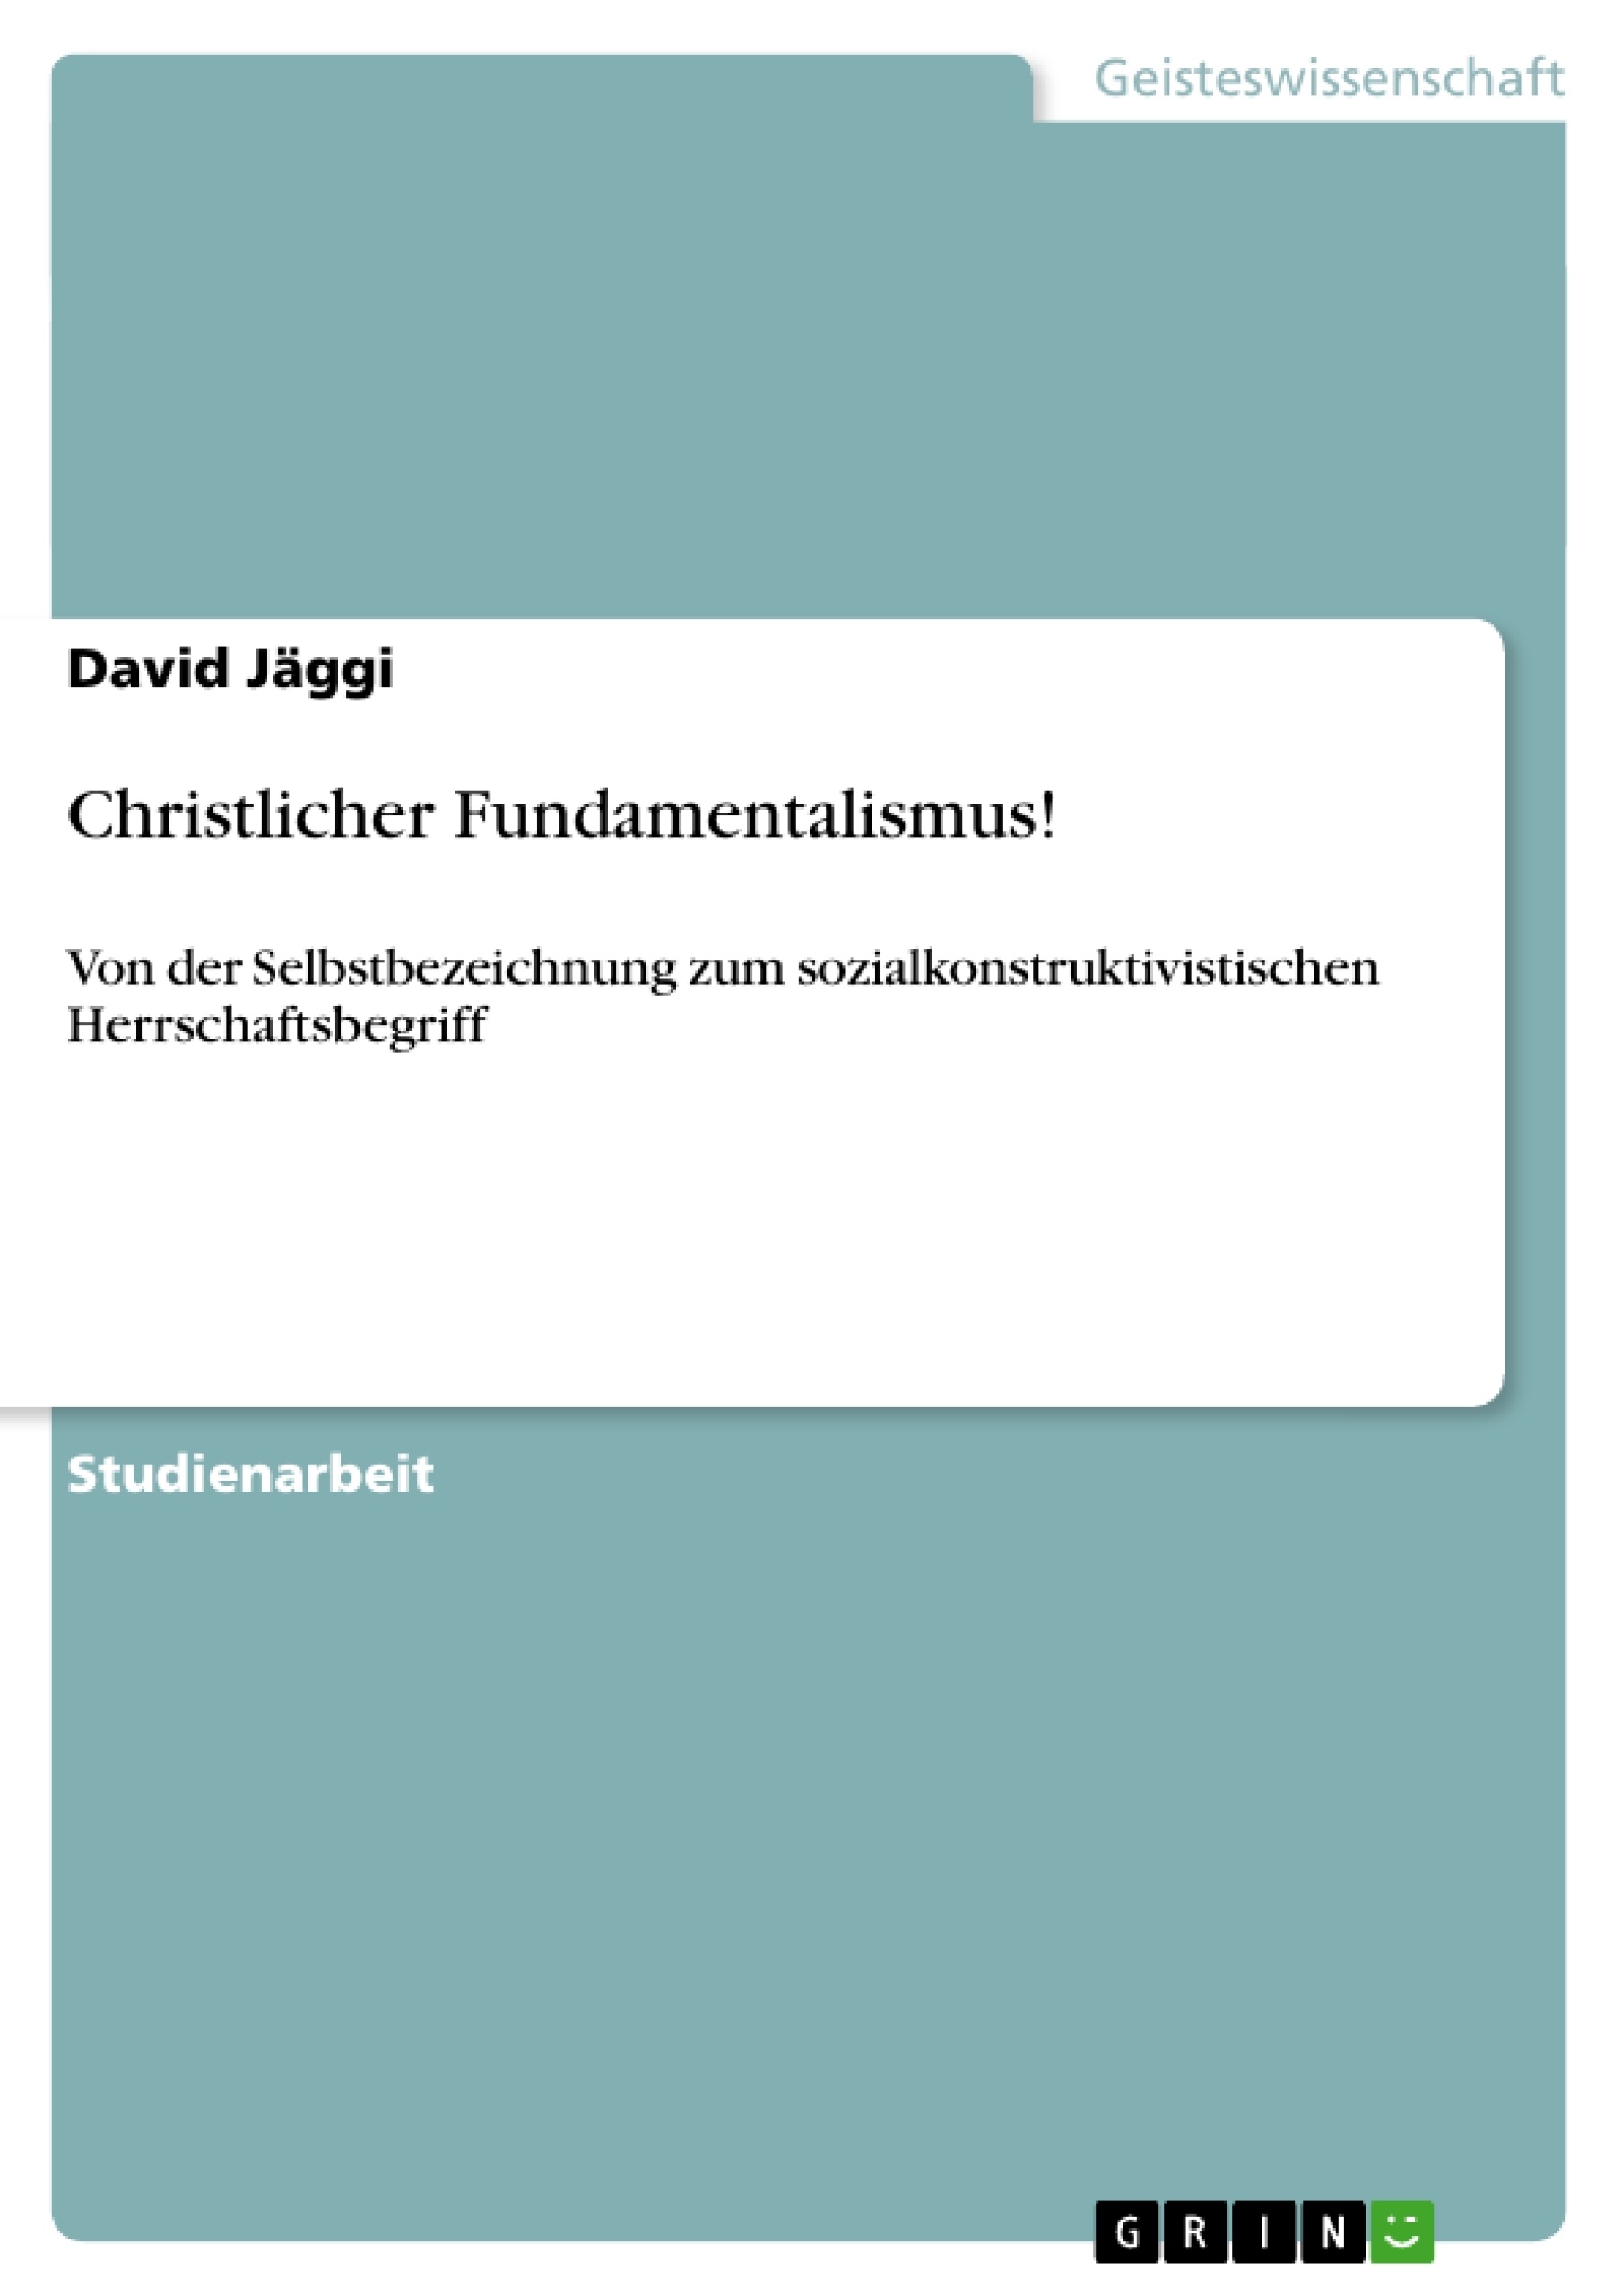 Título: Christlicher Fundamentalismus!